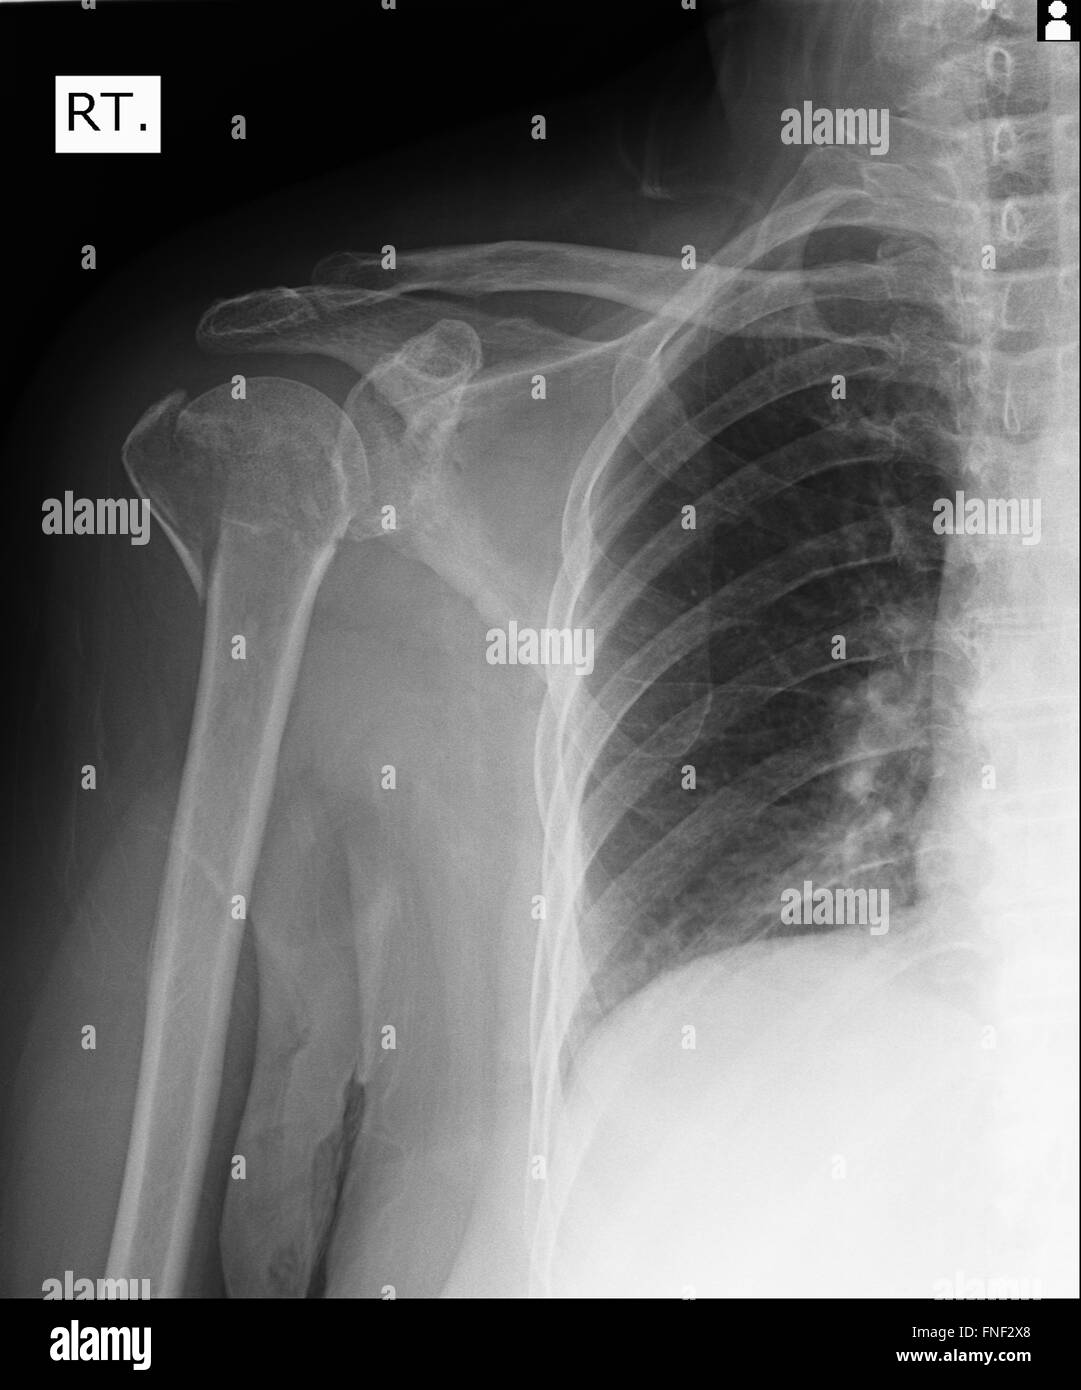 Radiografía de hombro humano Foto de stock